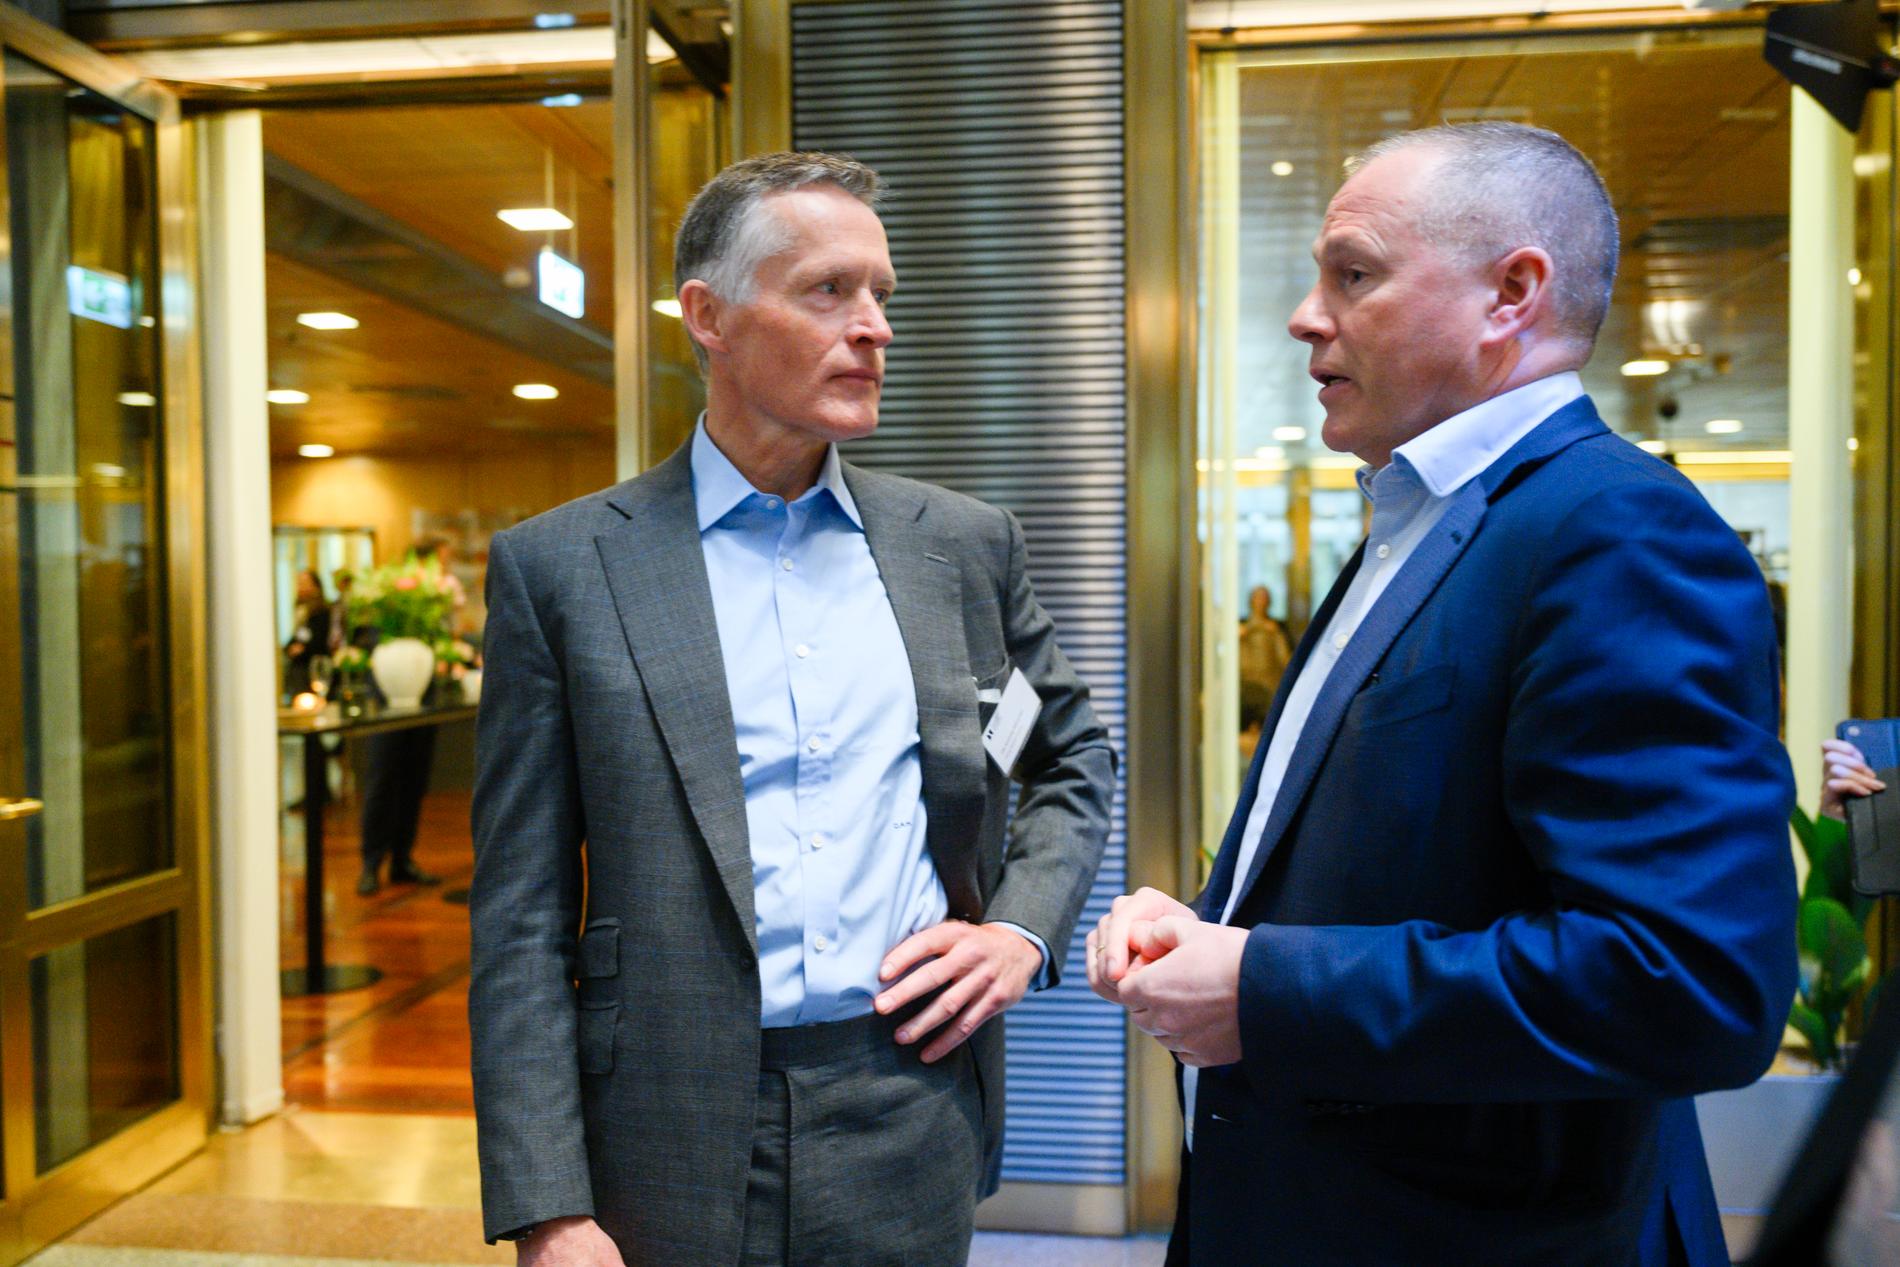 Deltagerne på Norges Banks investorkonferanse var delt mellom Ole Andreas Halvorsen og Nicolai Tangen i spørsmålet om hvem som er den beste investoren til stede. 